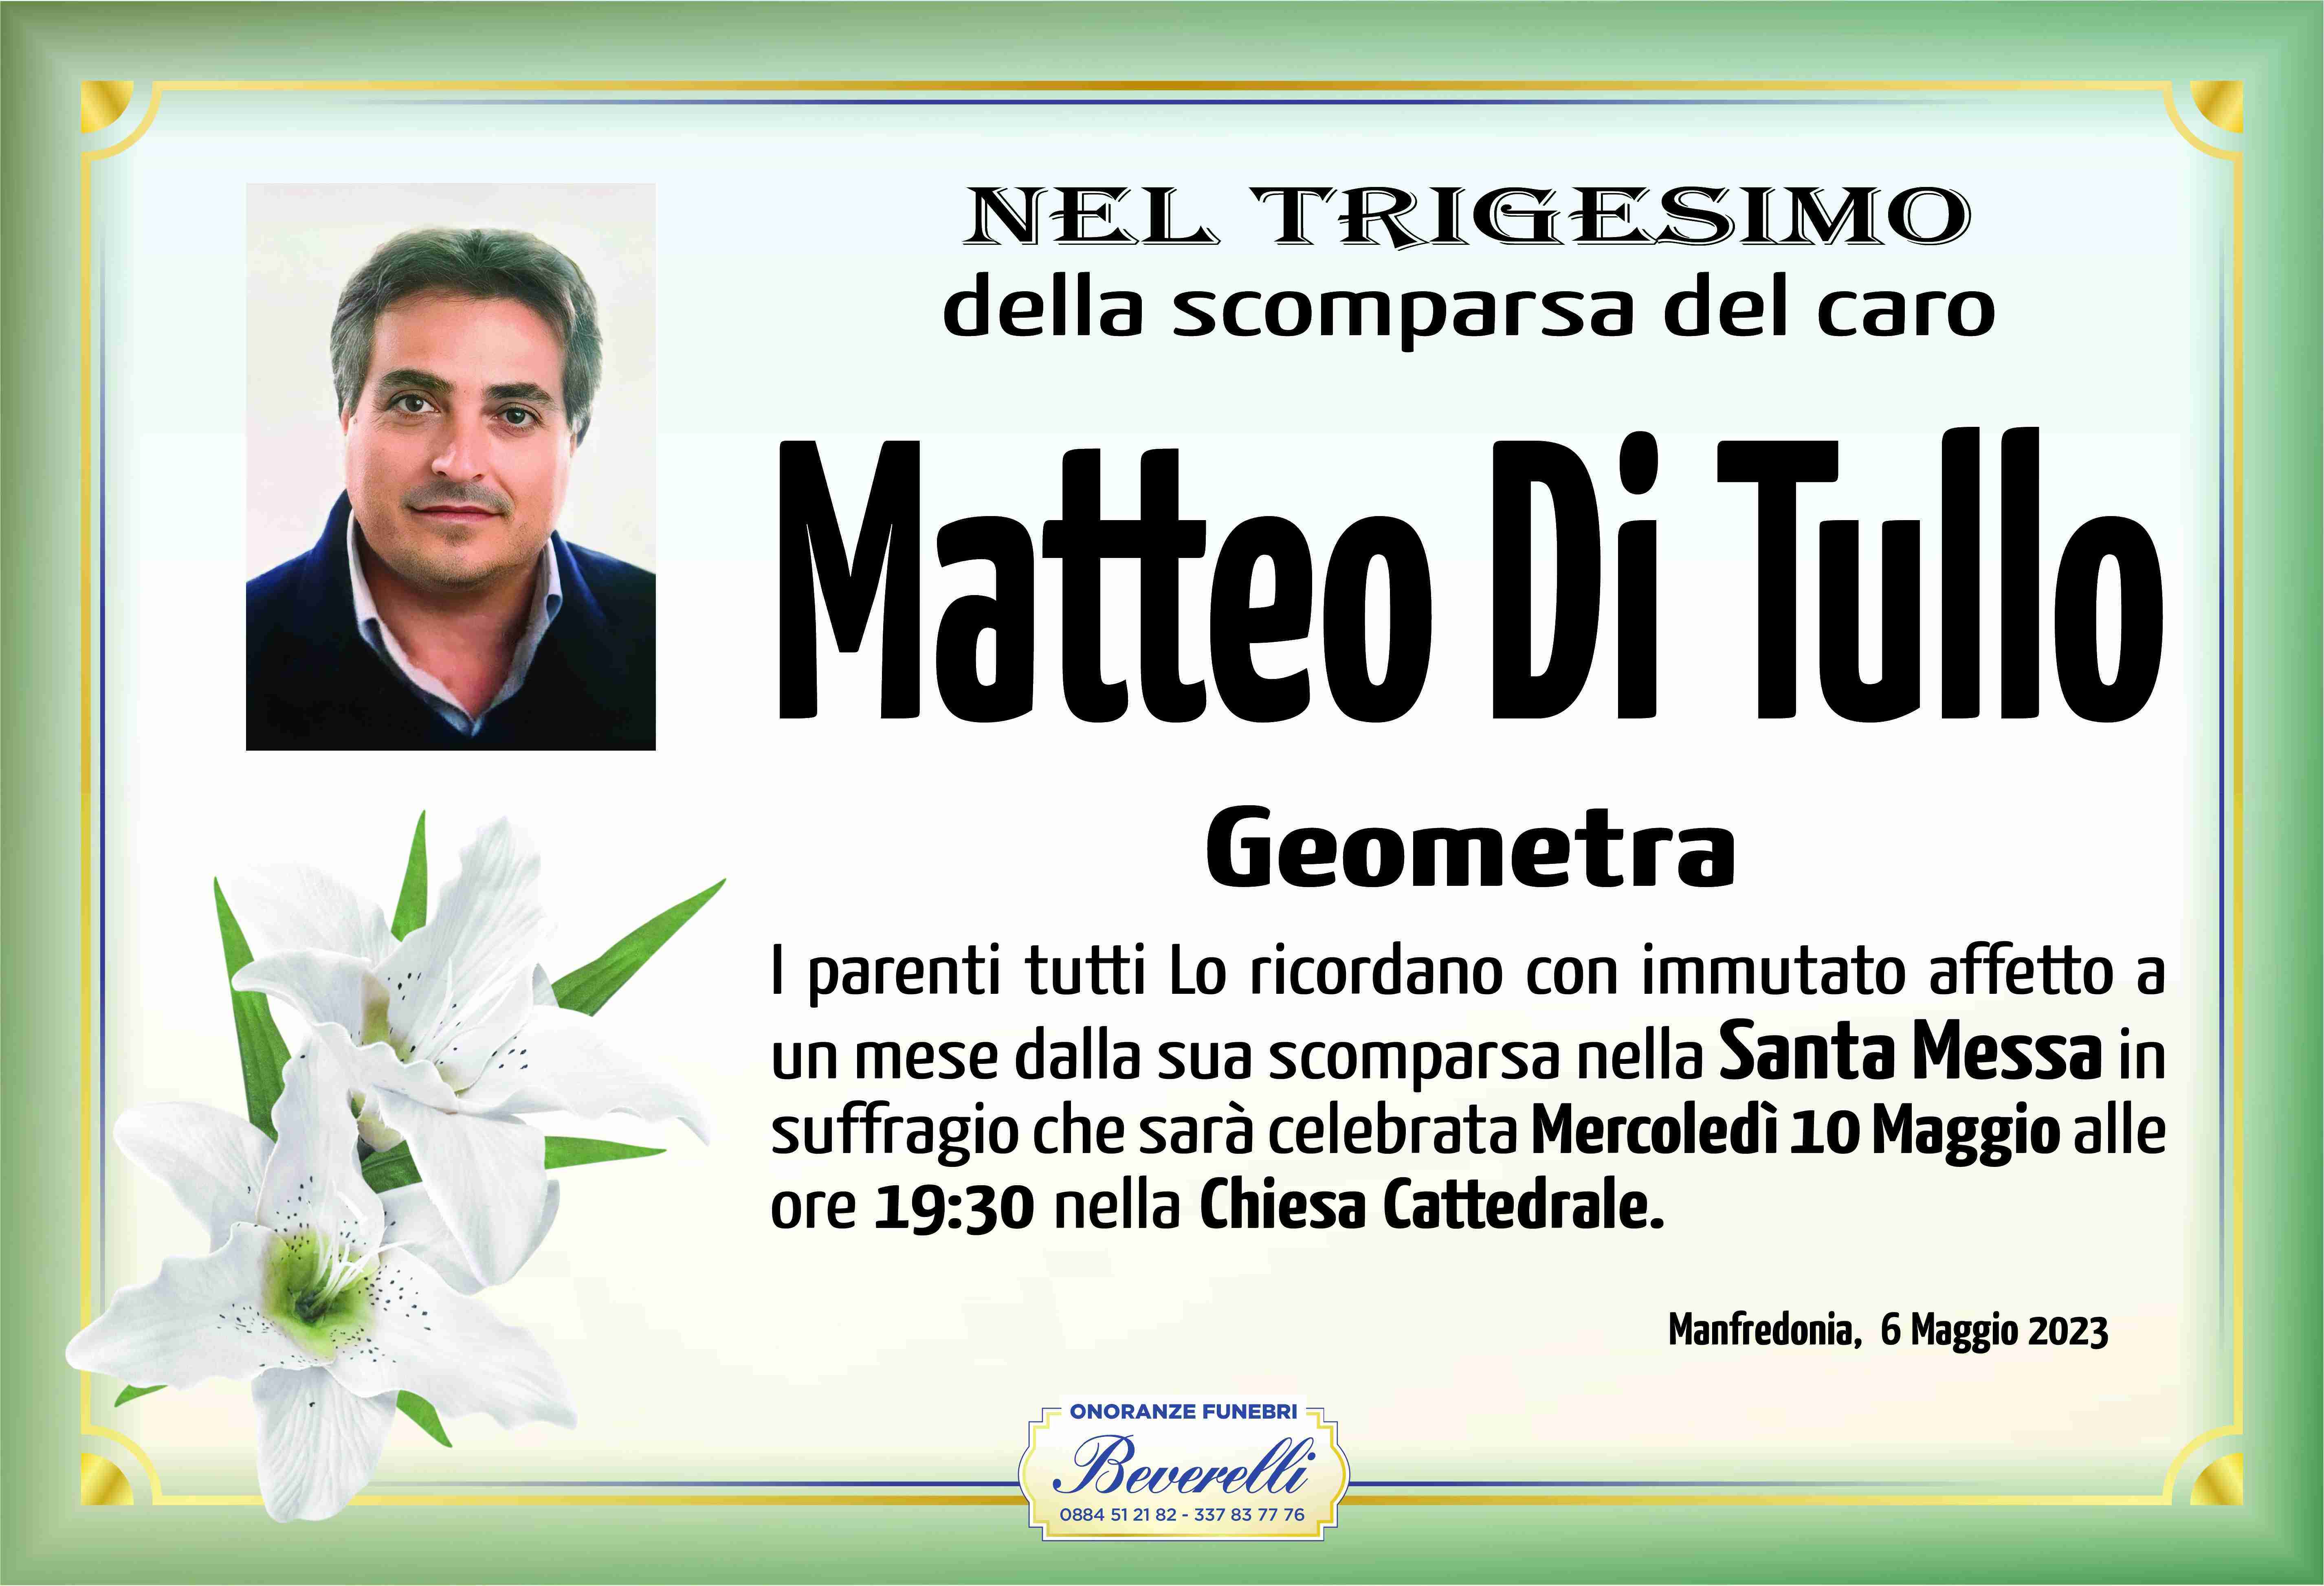 Matteo Di Tullo